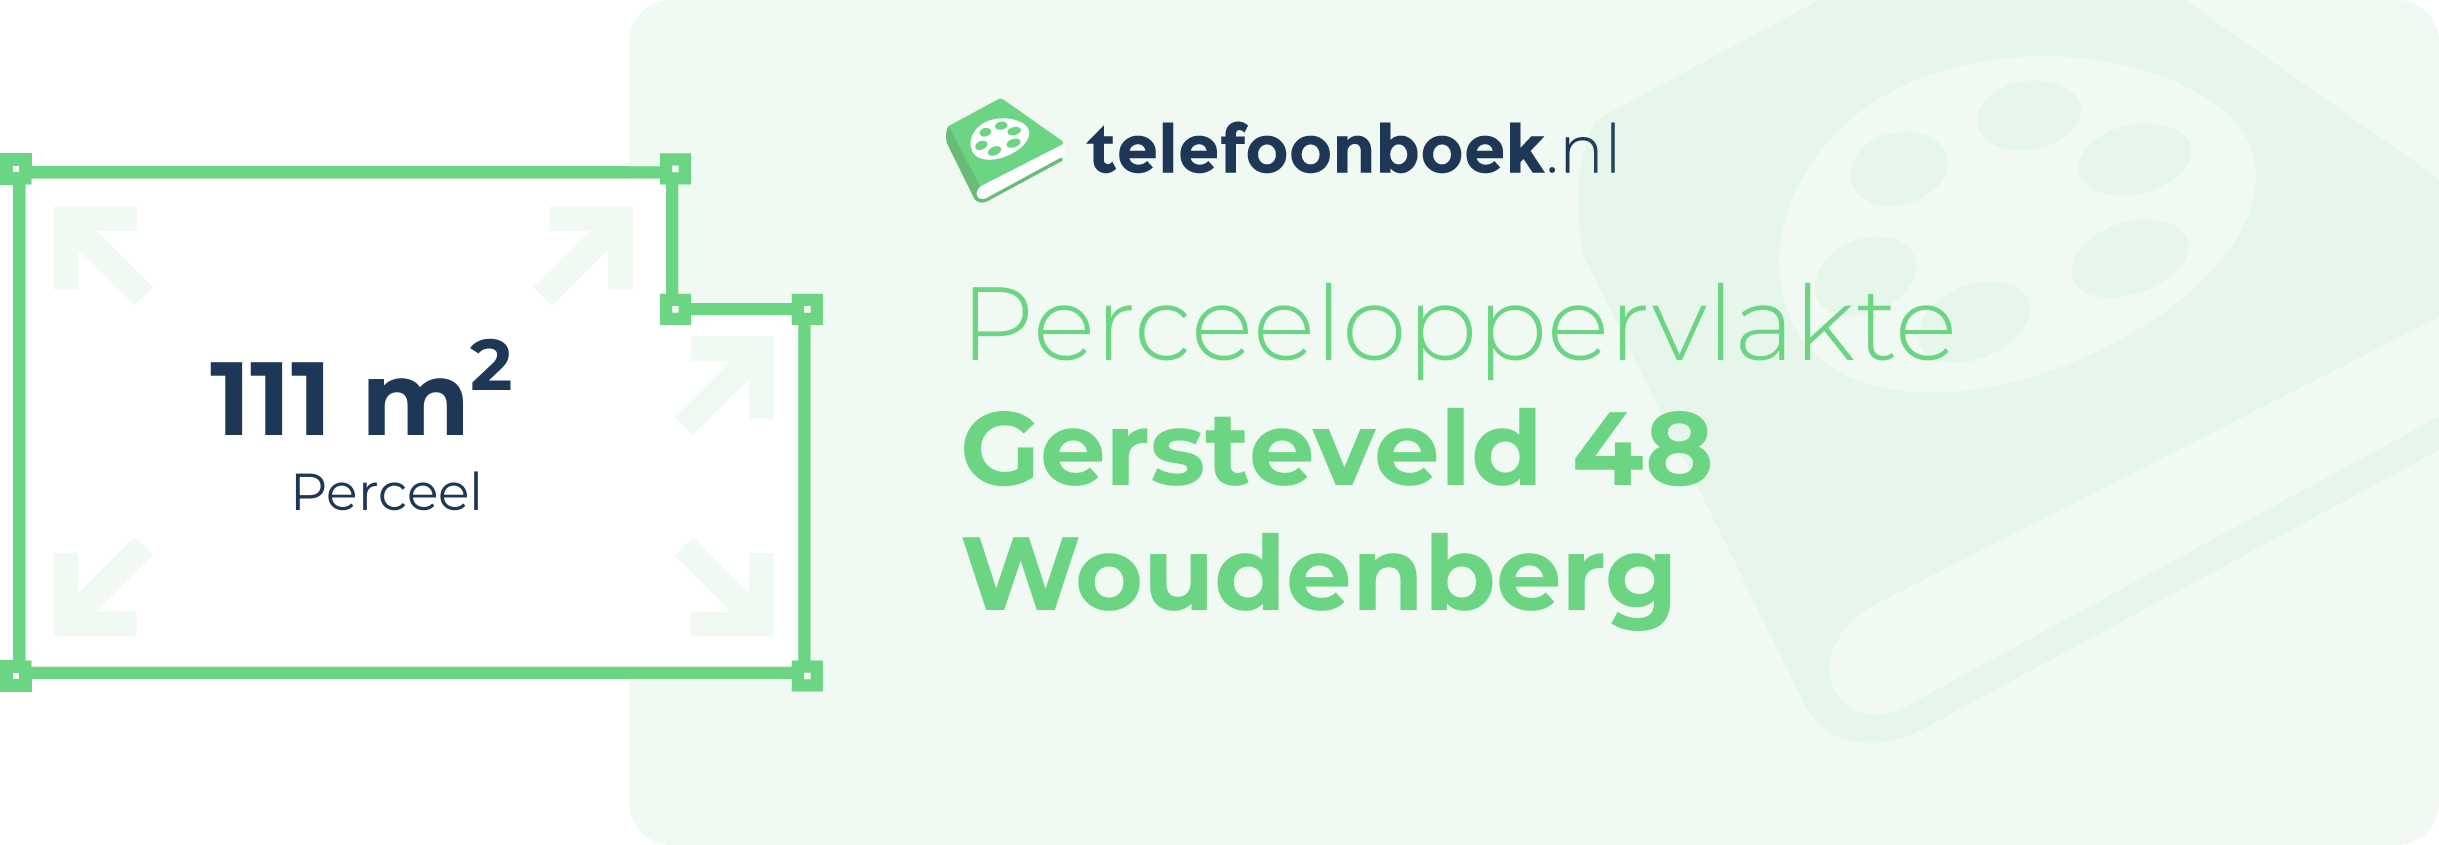 Perceeloppervlakte Gersteveld 48 Woudenberg